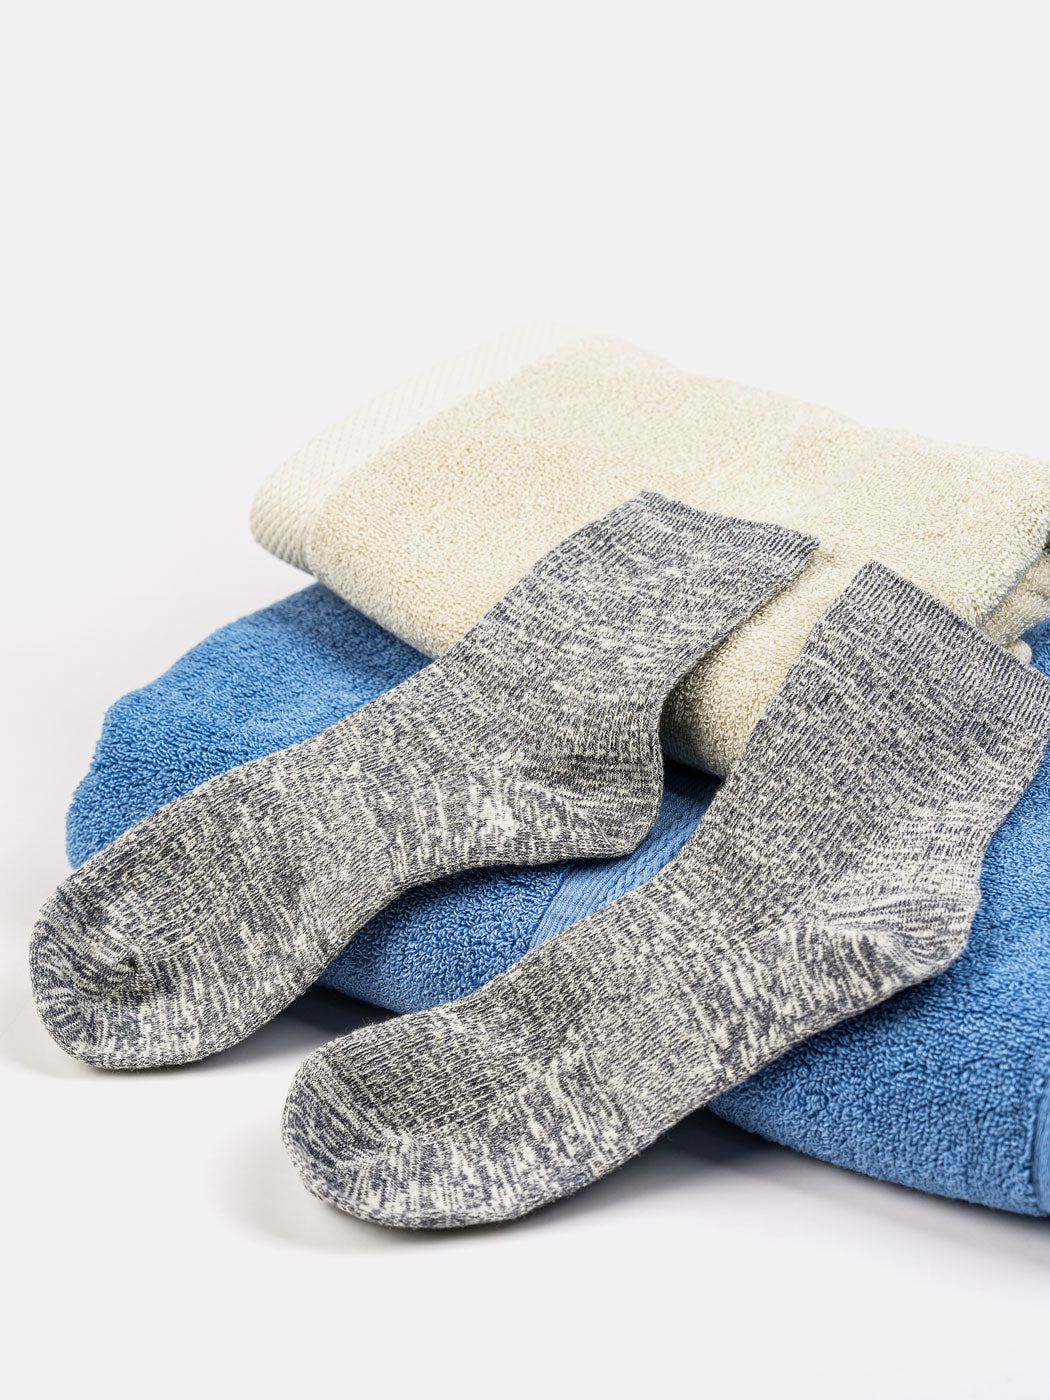 hemp socks and hemp towels